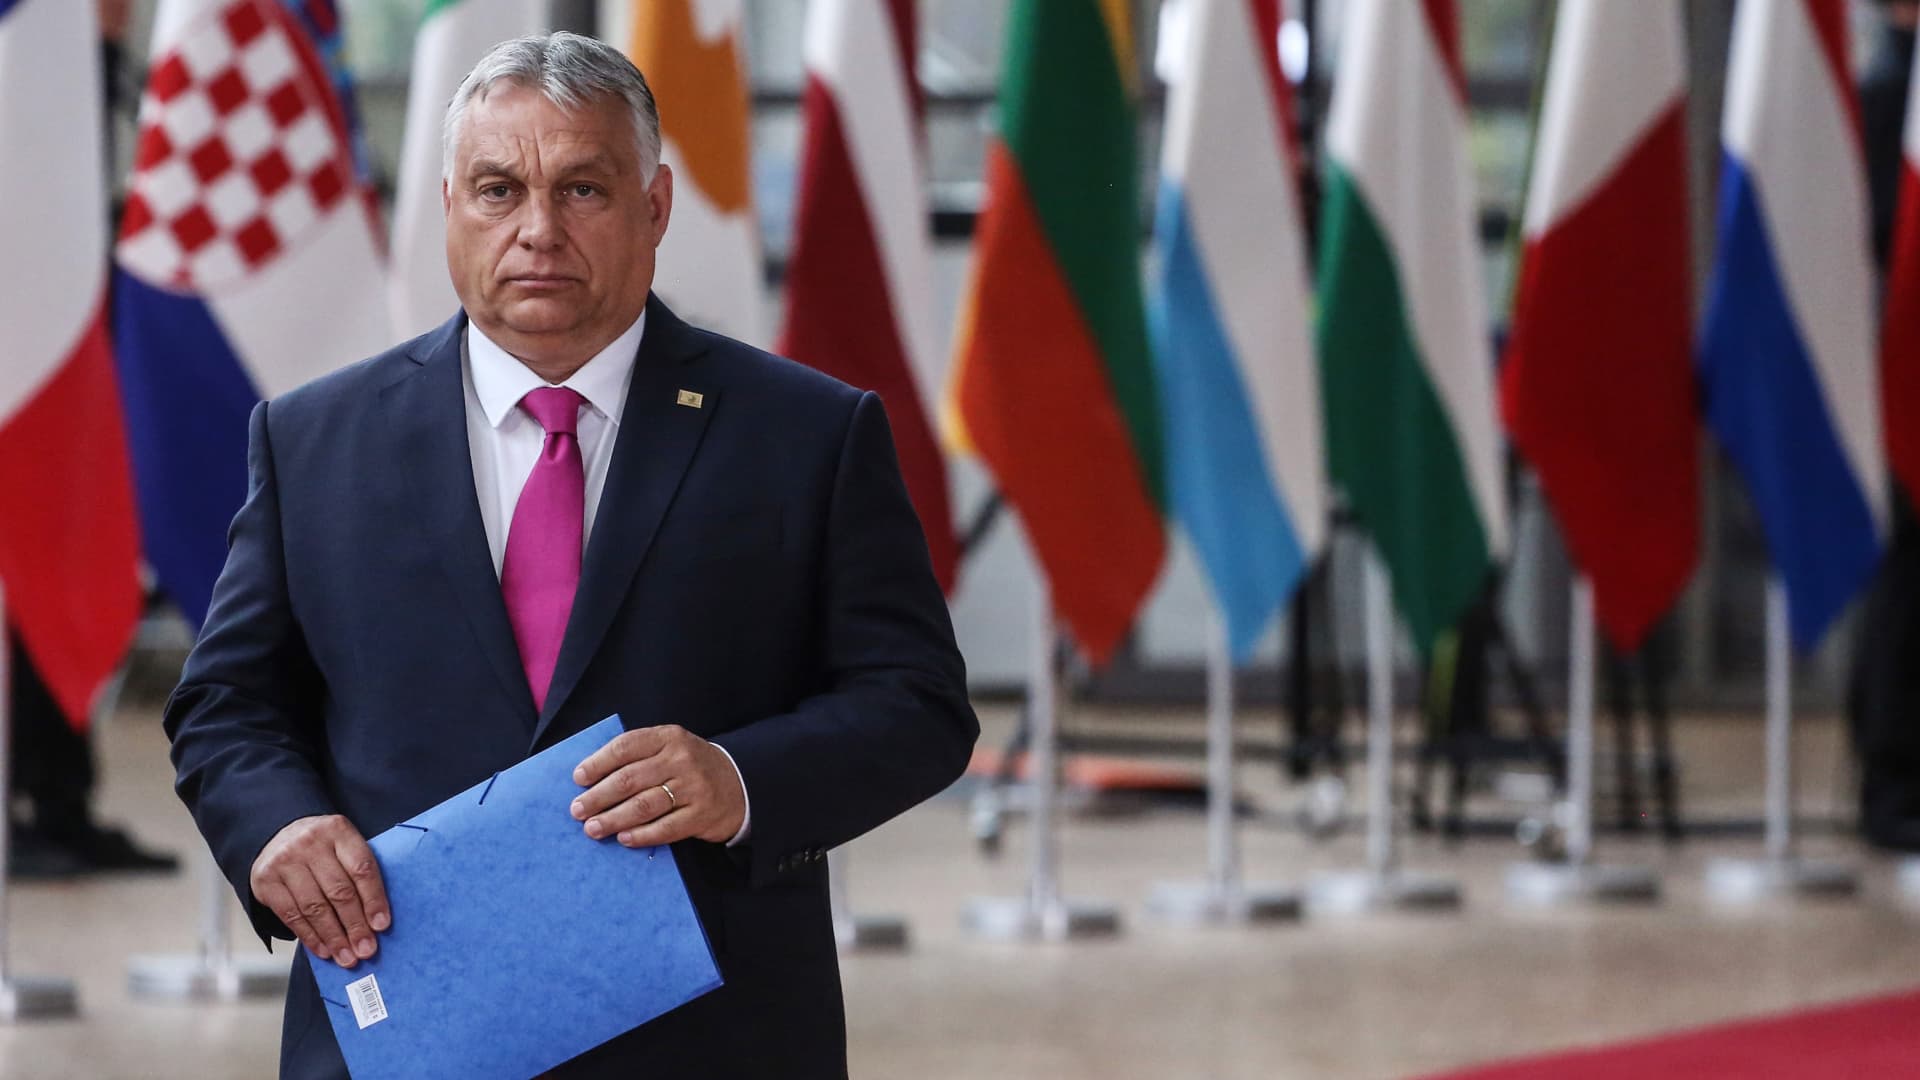 Hungary’s populist Orbán to take over EU presidency